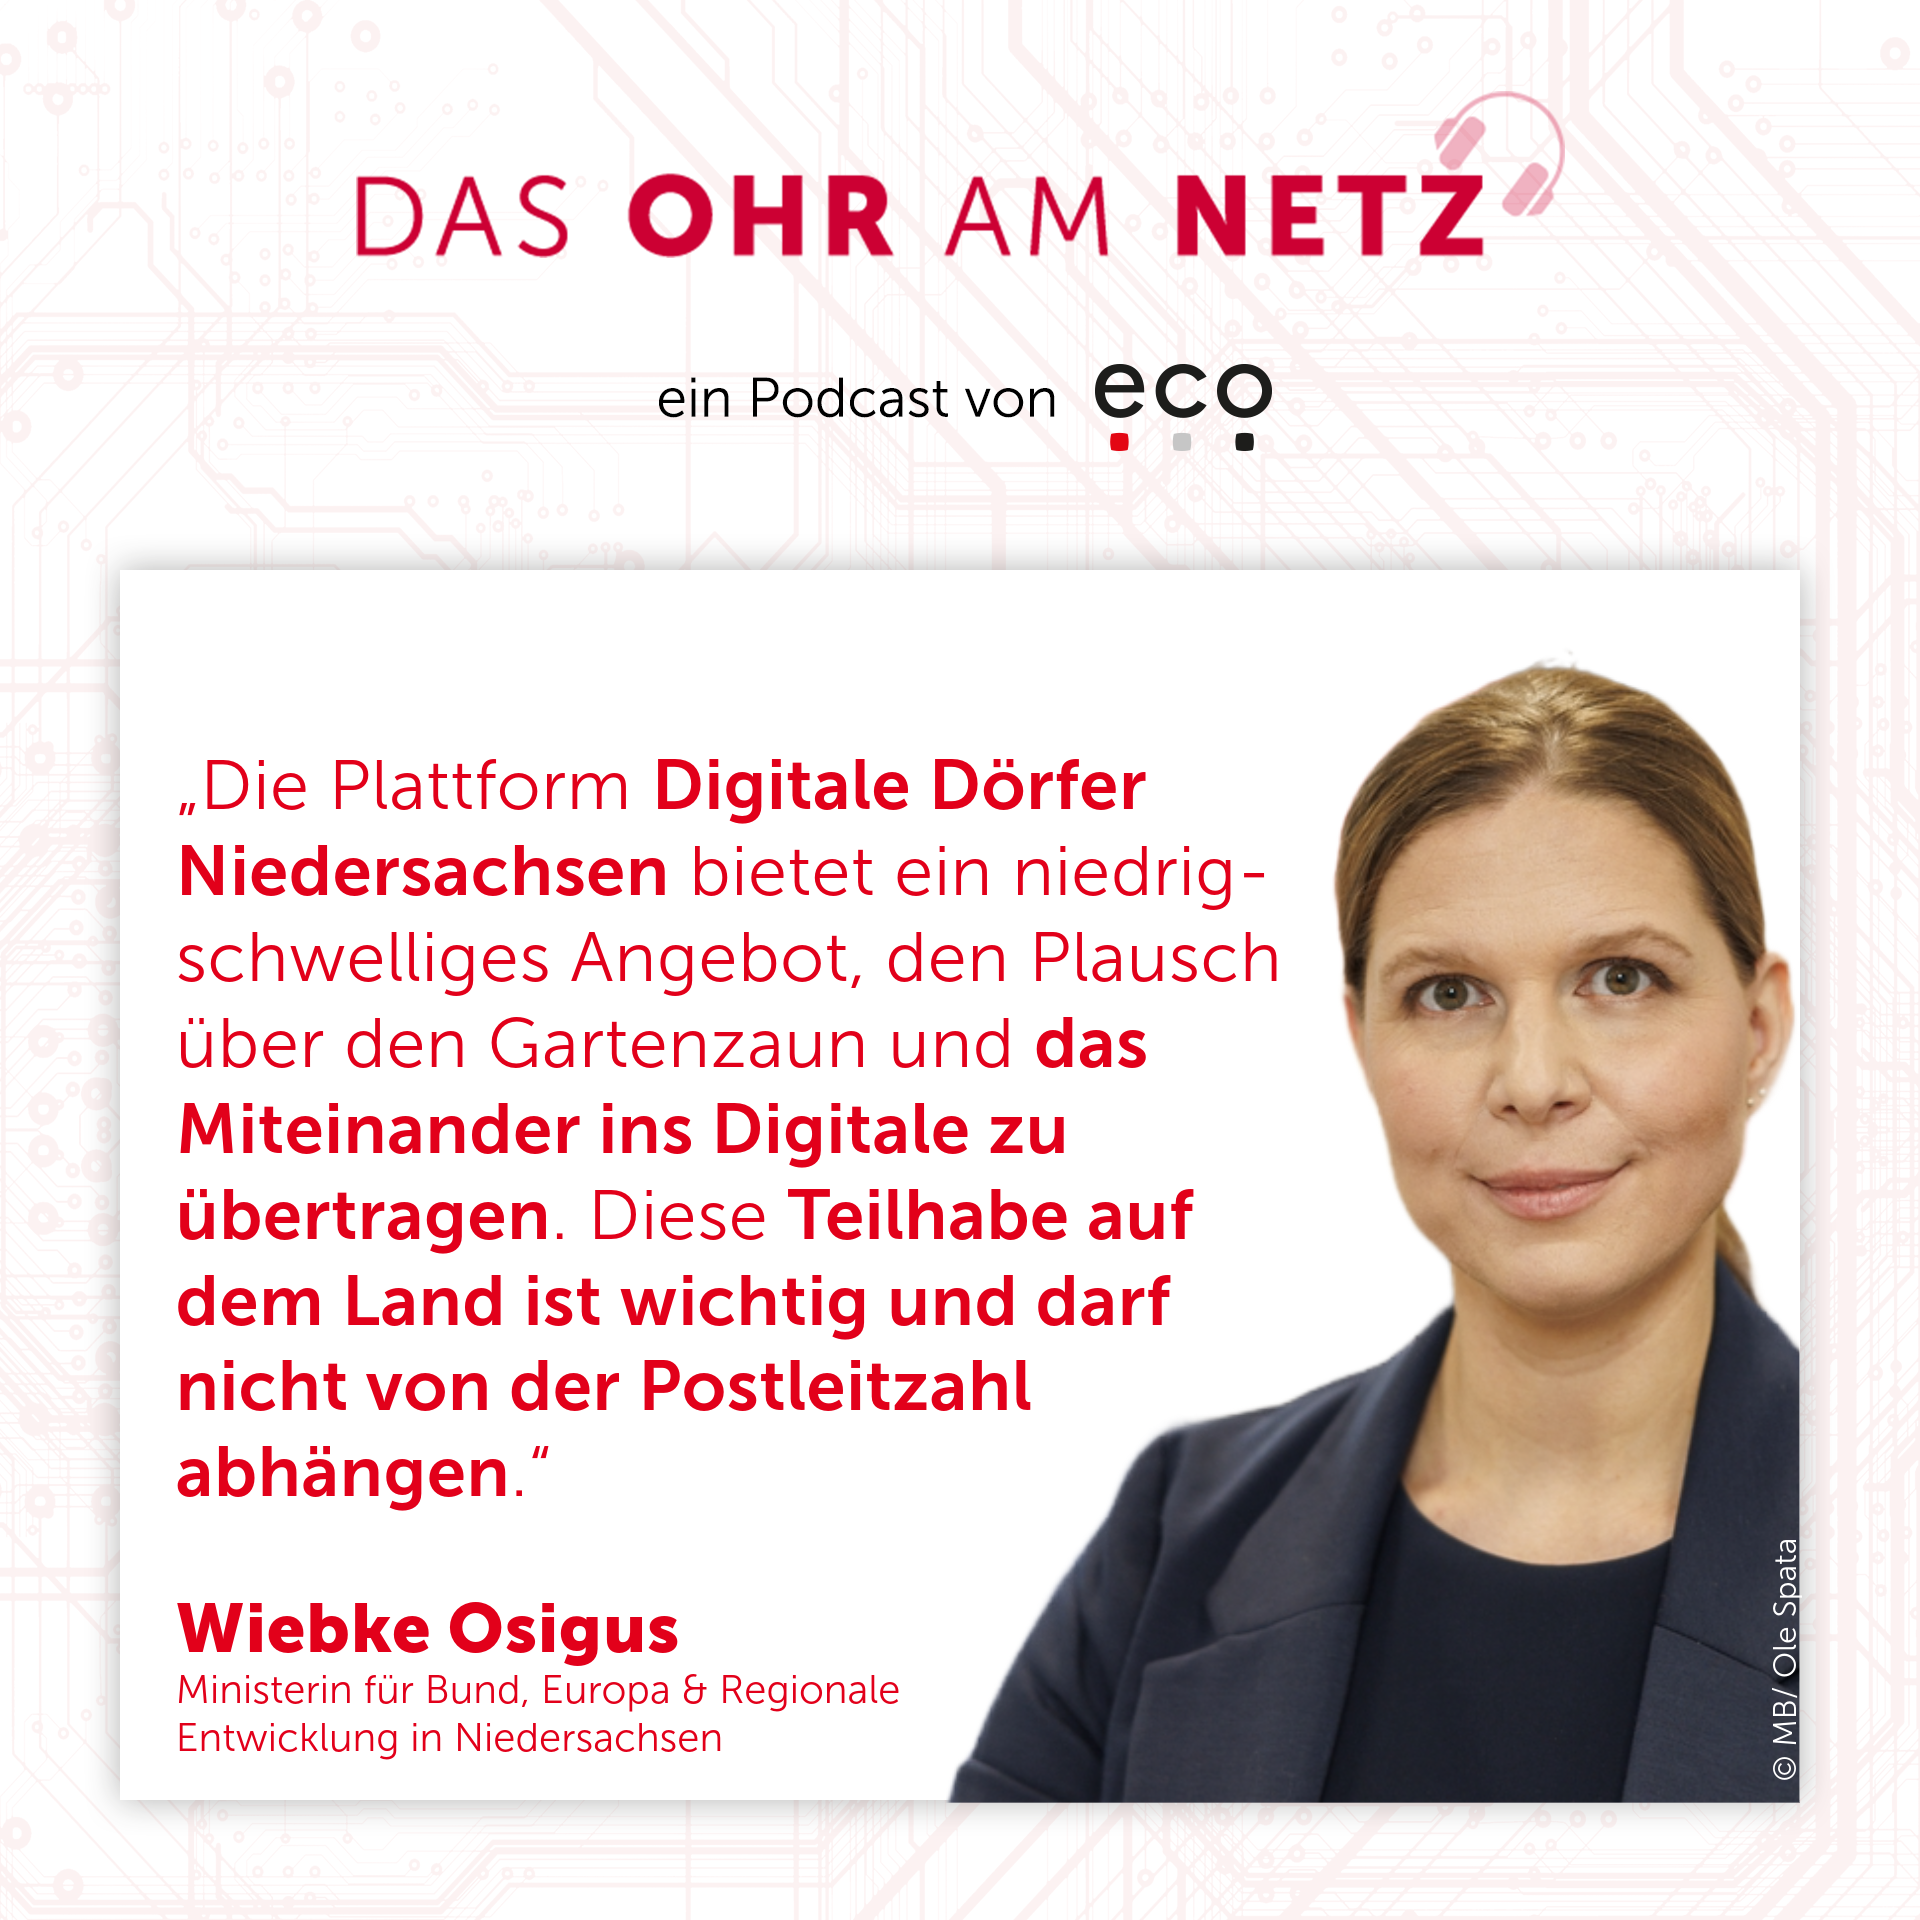 eco Podcast zu Digitalisierung auf dem Land 3